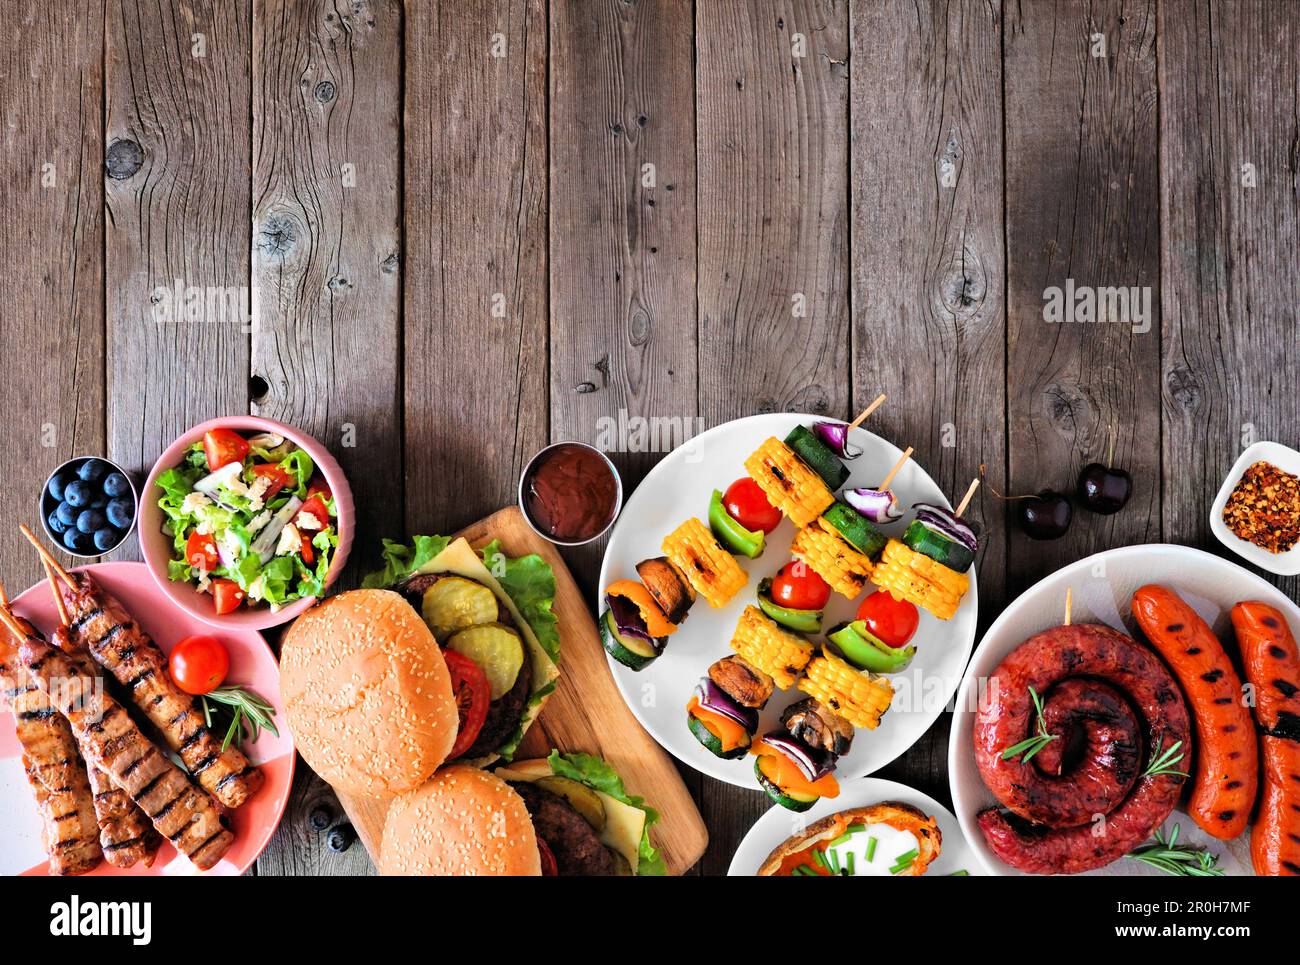 Barbecue d'été ou pique-nique bordure inférieure. Collection de hamburgers, viande grillée, légumes, fruits, salade et pommes de terre. Vue de haut en bas sur un bac en bois sombre Banque D'Images